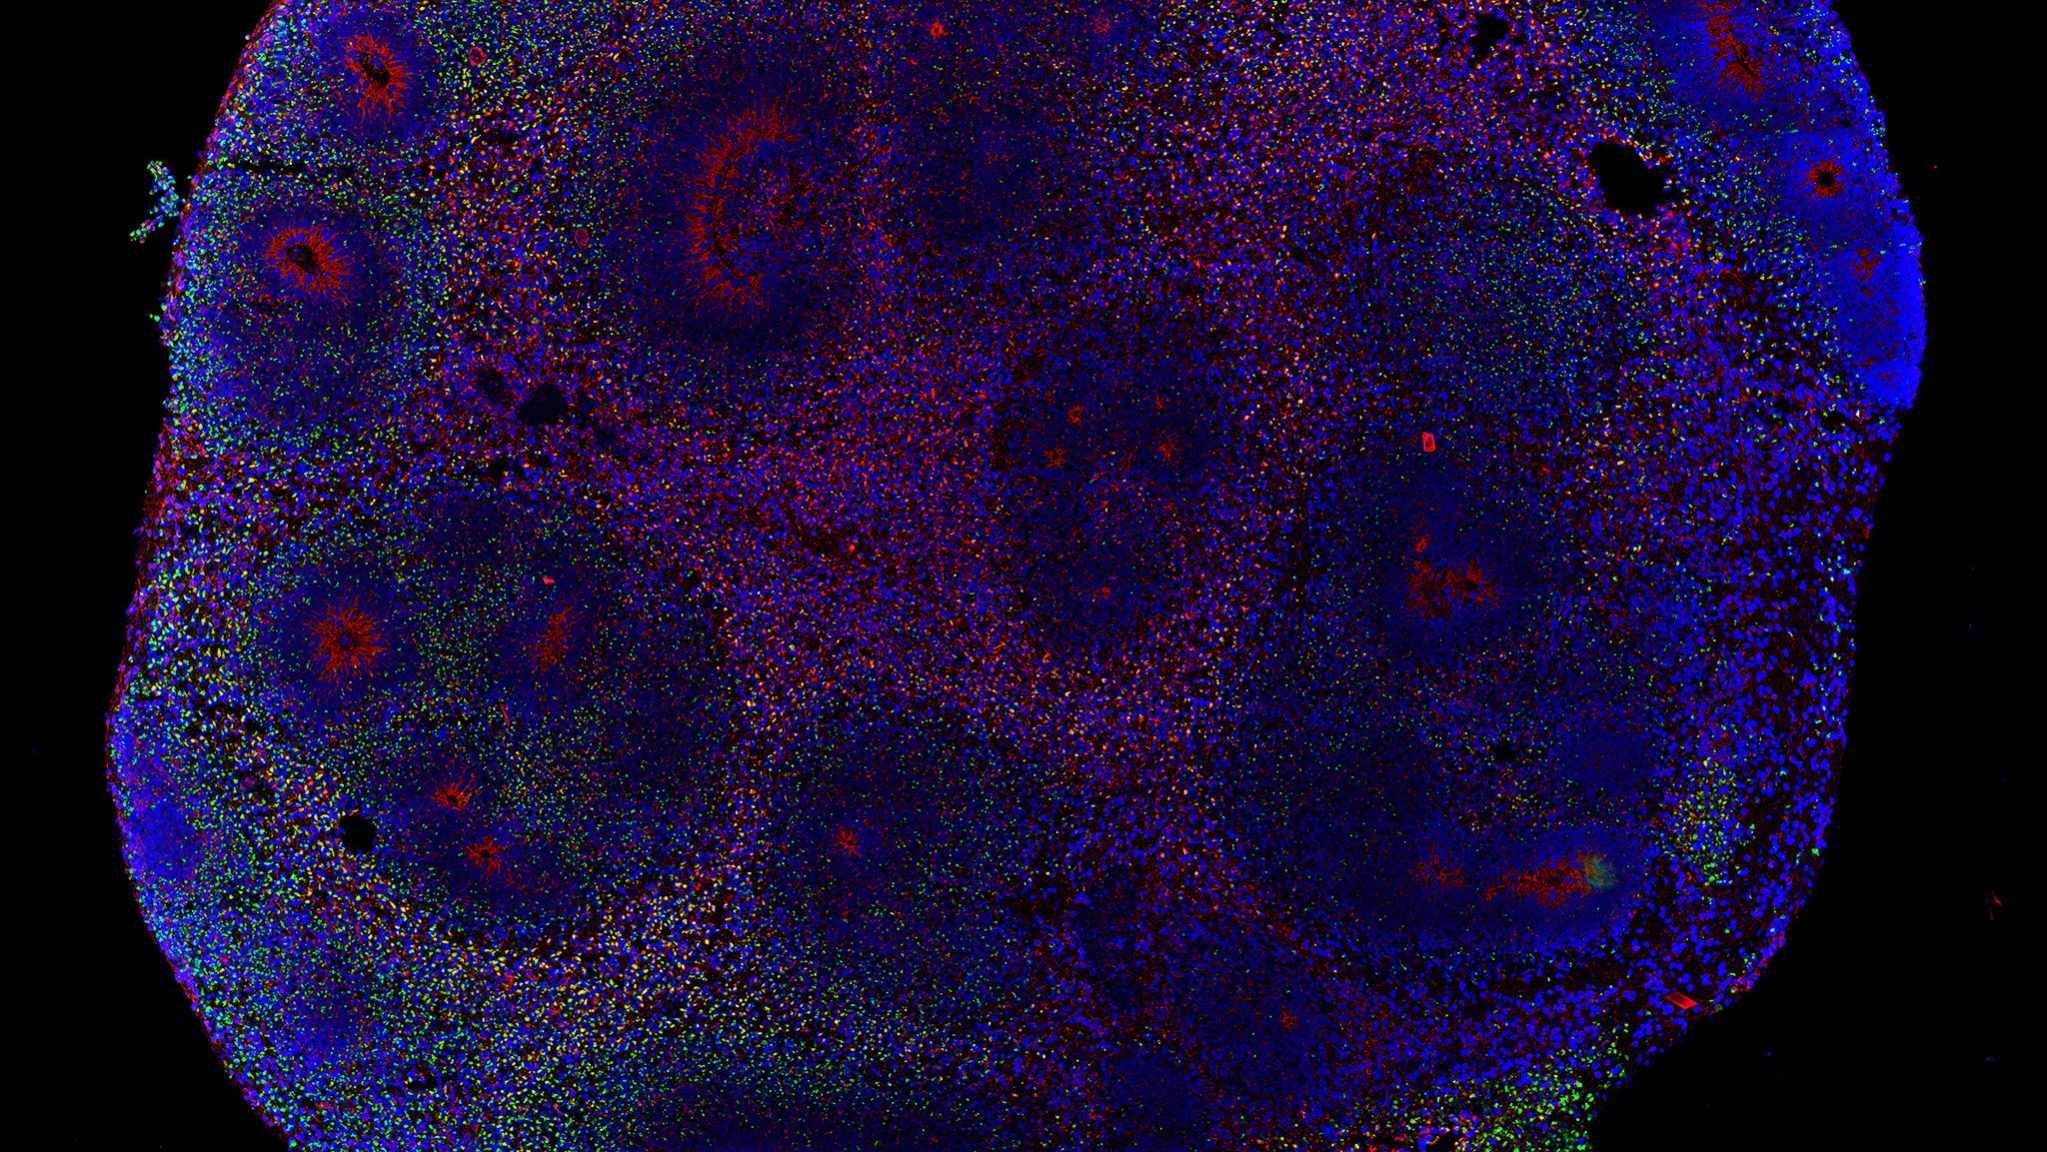 Organoide cerebral (minibrain) infectado com o vírus da zika por 13 dias. Em verde as células infectadas, em vermelho os neurônios e, em azul, os núcleos de todas as células do organoide. (Foto: Divulgação)